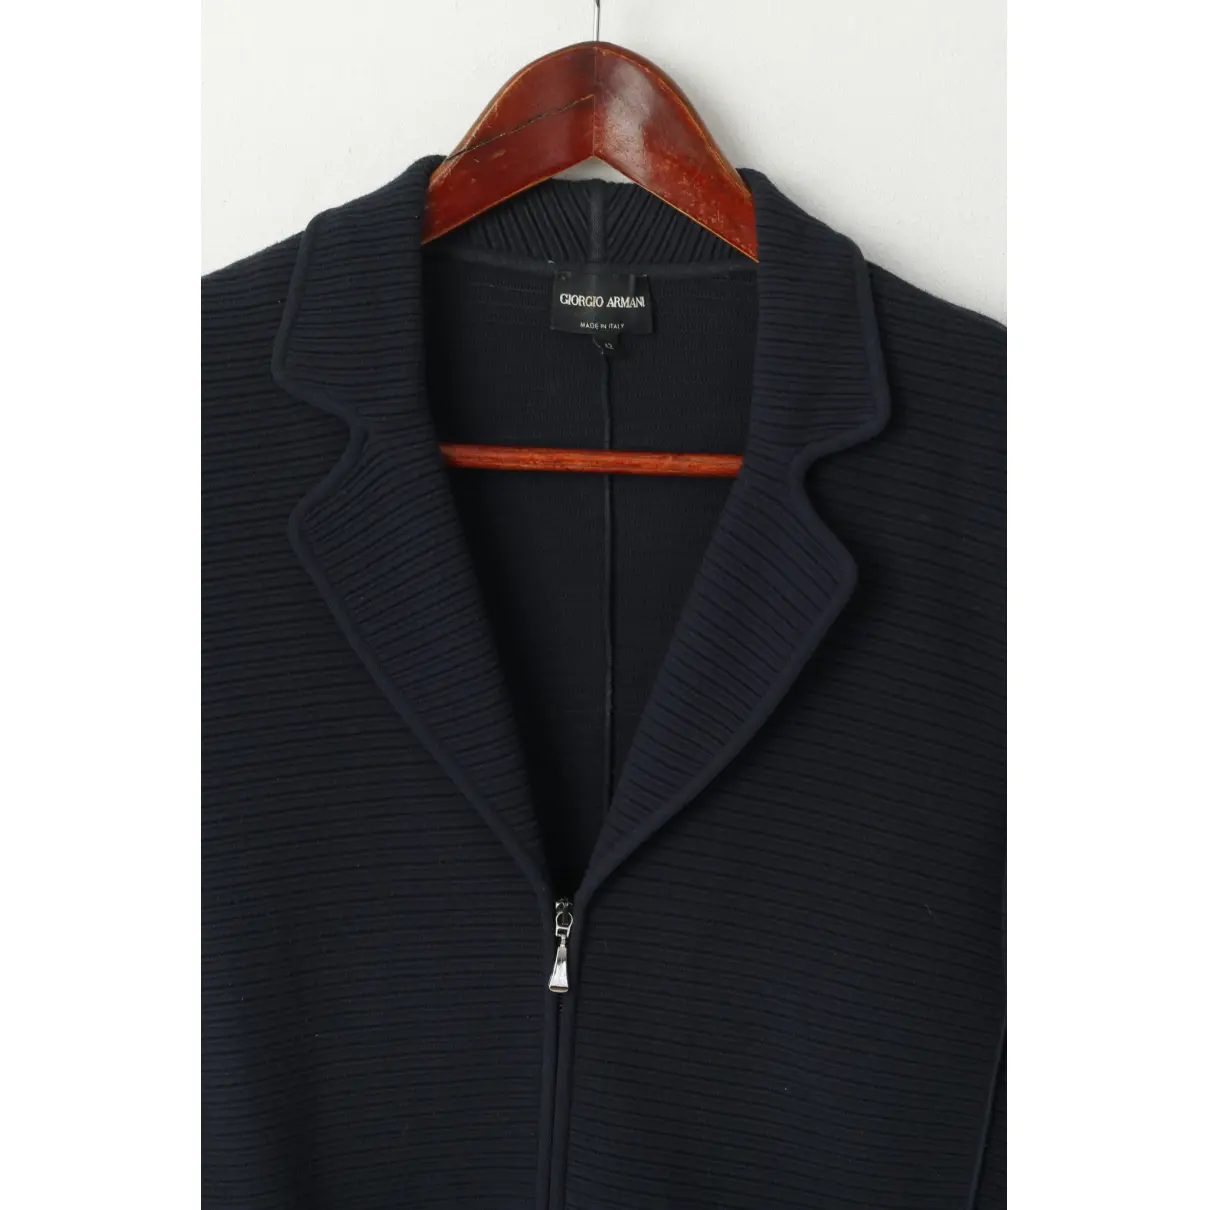 Navy Viscose Jacket Giorgio Armani - Vintage